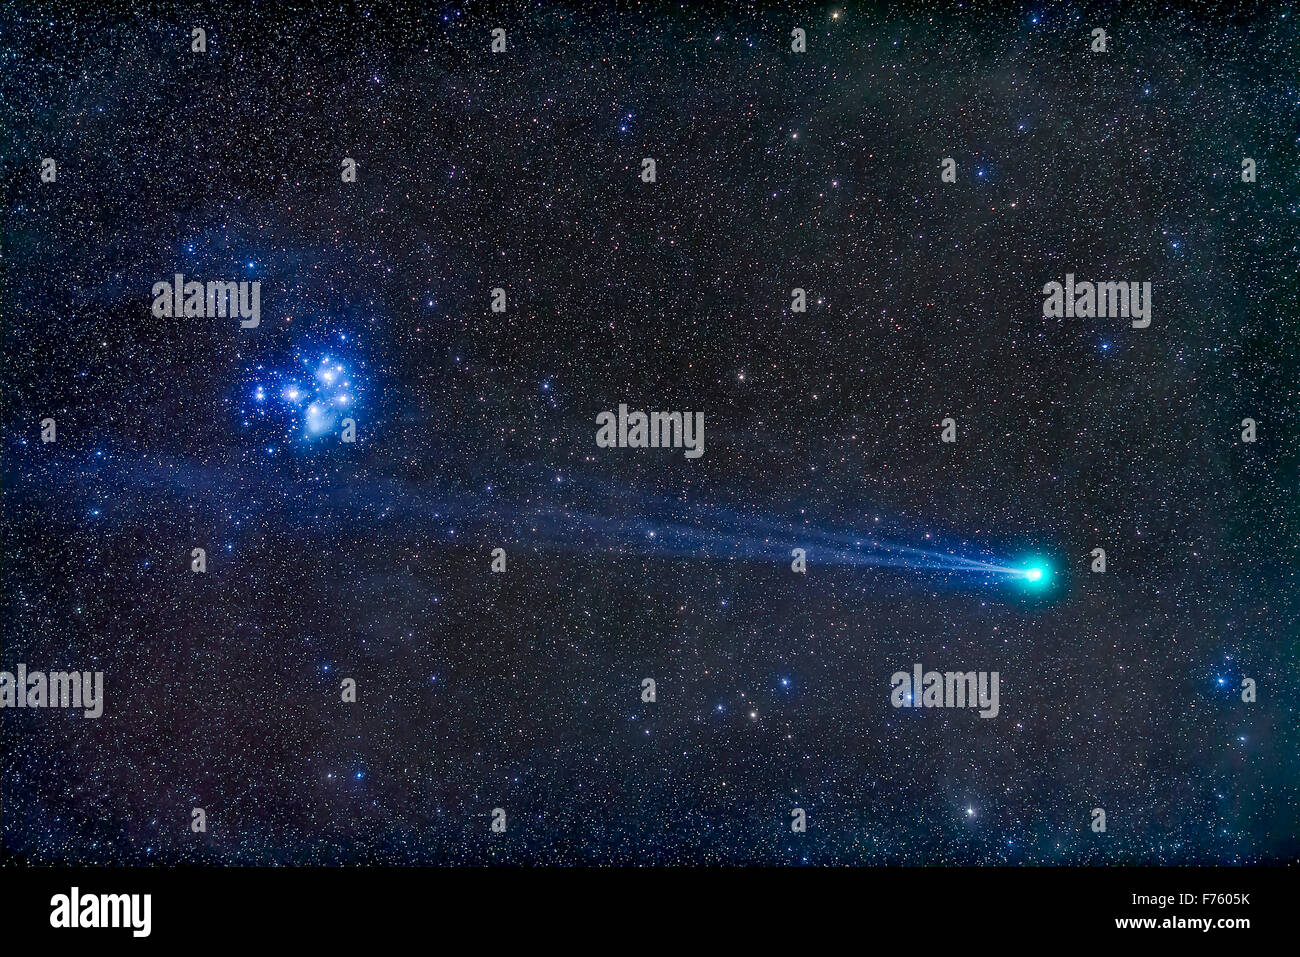 Comey Lovejoy, C/2014 Q2, Nähe der Plejaden Sternhaufen Messier 45, in der Nacht vom Sonntag, 18. Januar 2015, mit seinen blauen Stockfoto